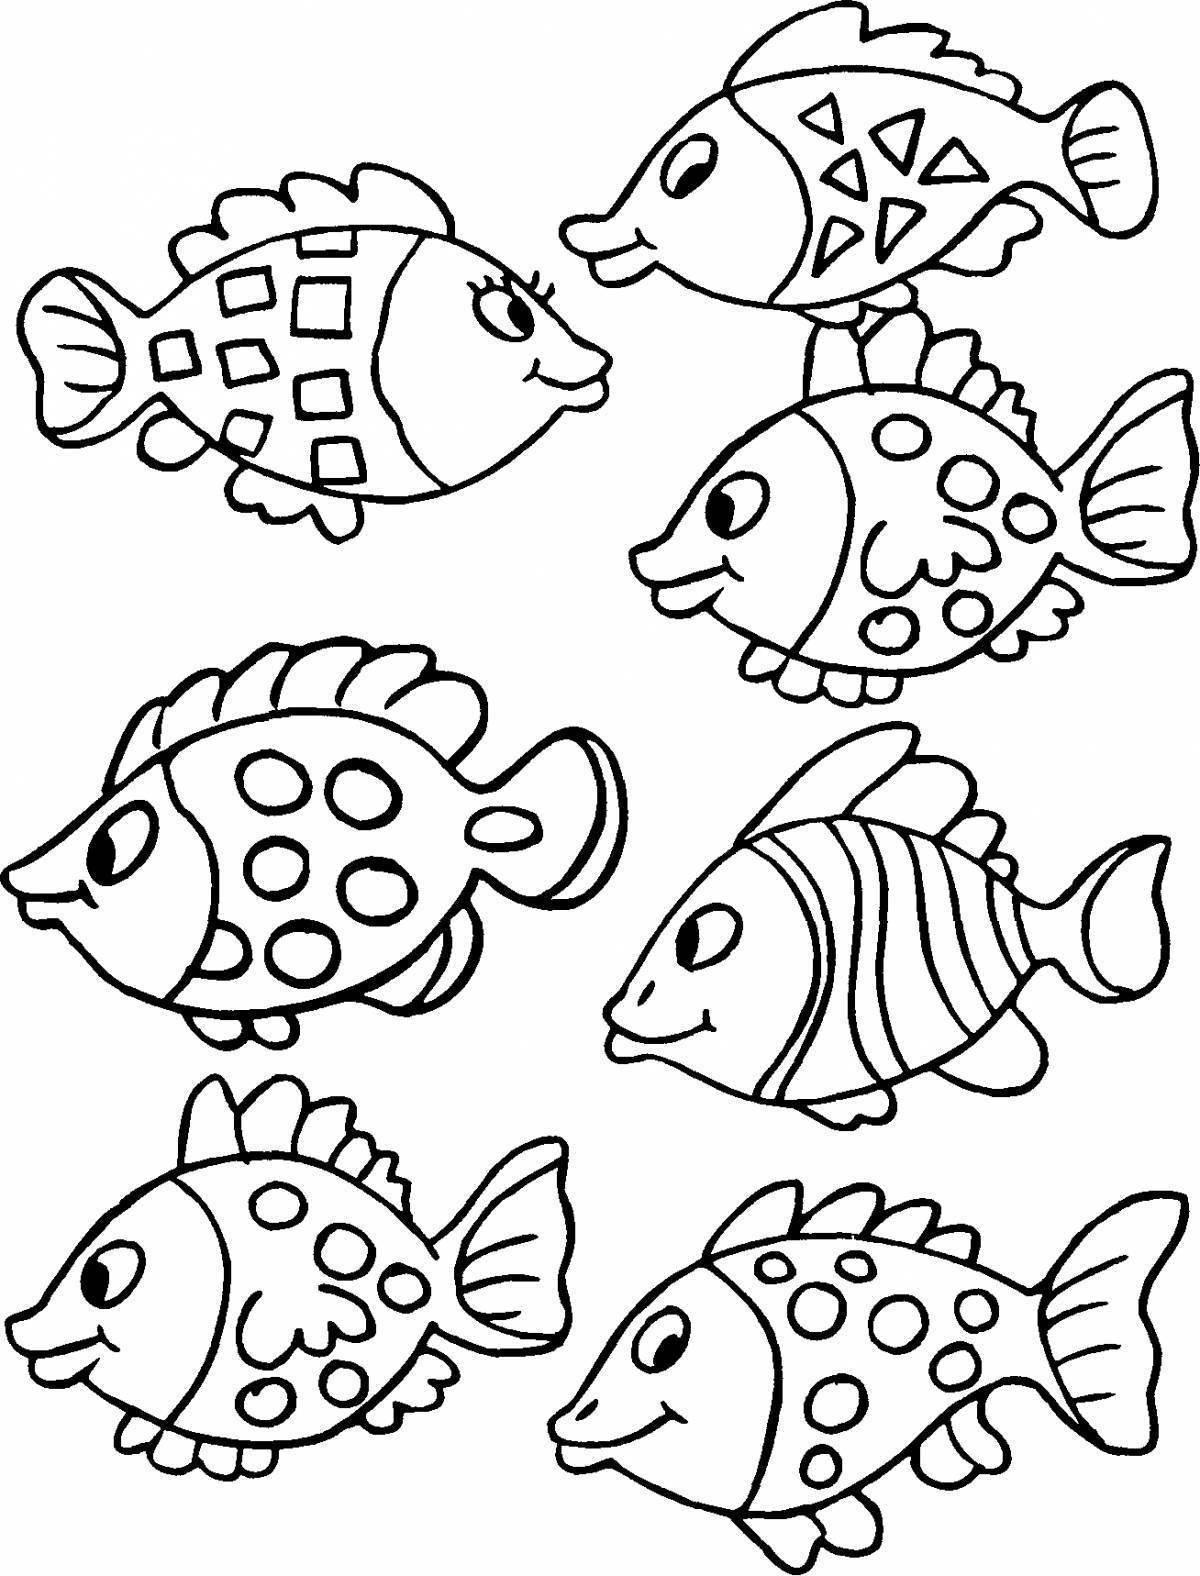 Раскраски с милыми рыбками для детей 5-6 лет